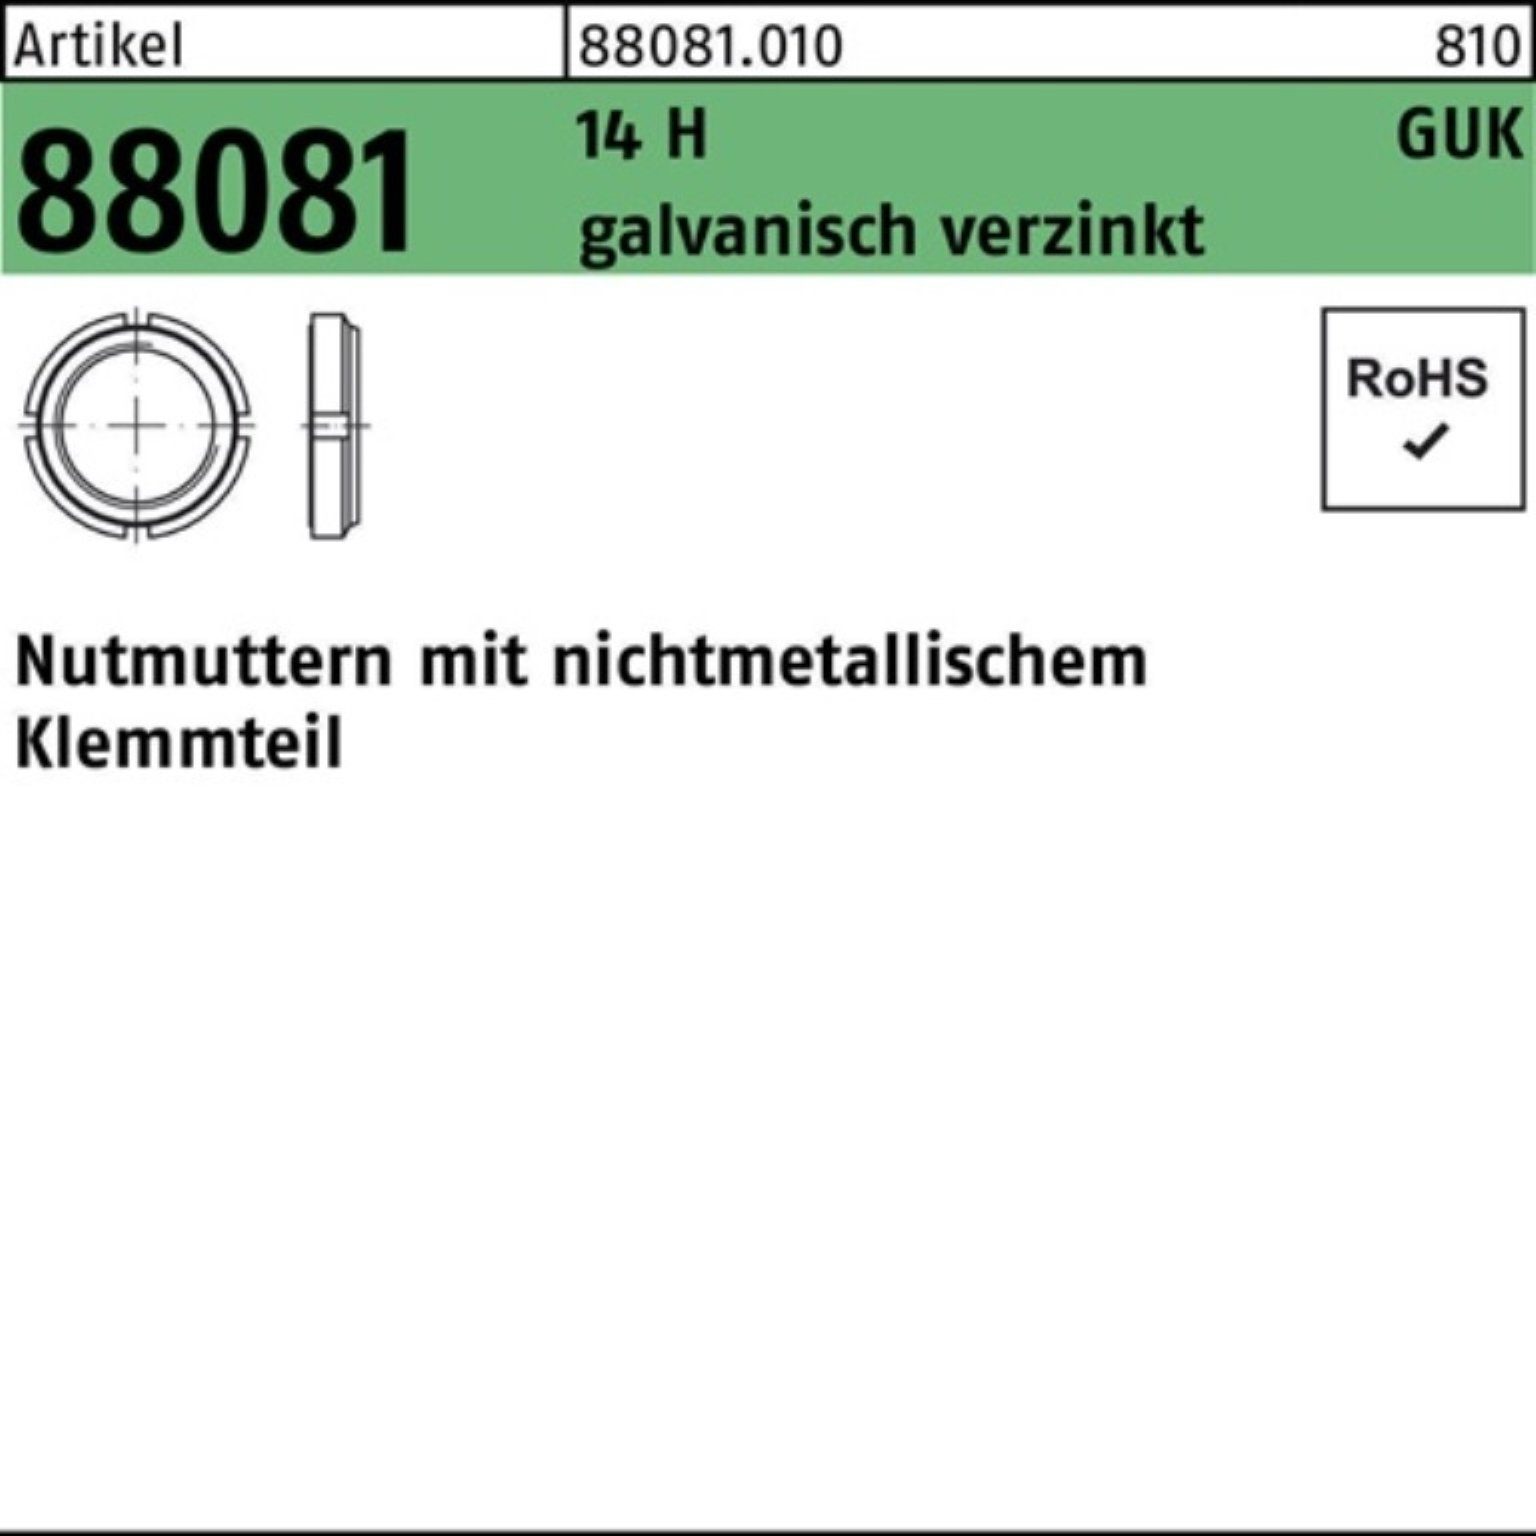 Reyher Nutmutter 100er Pack Nutmutter R 88081 Klemmteil GUK 3/M 17x1 14 H galv.verz. 10